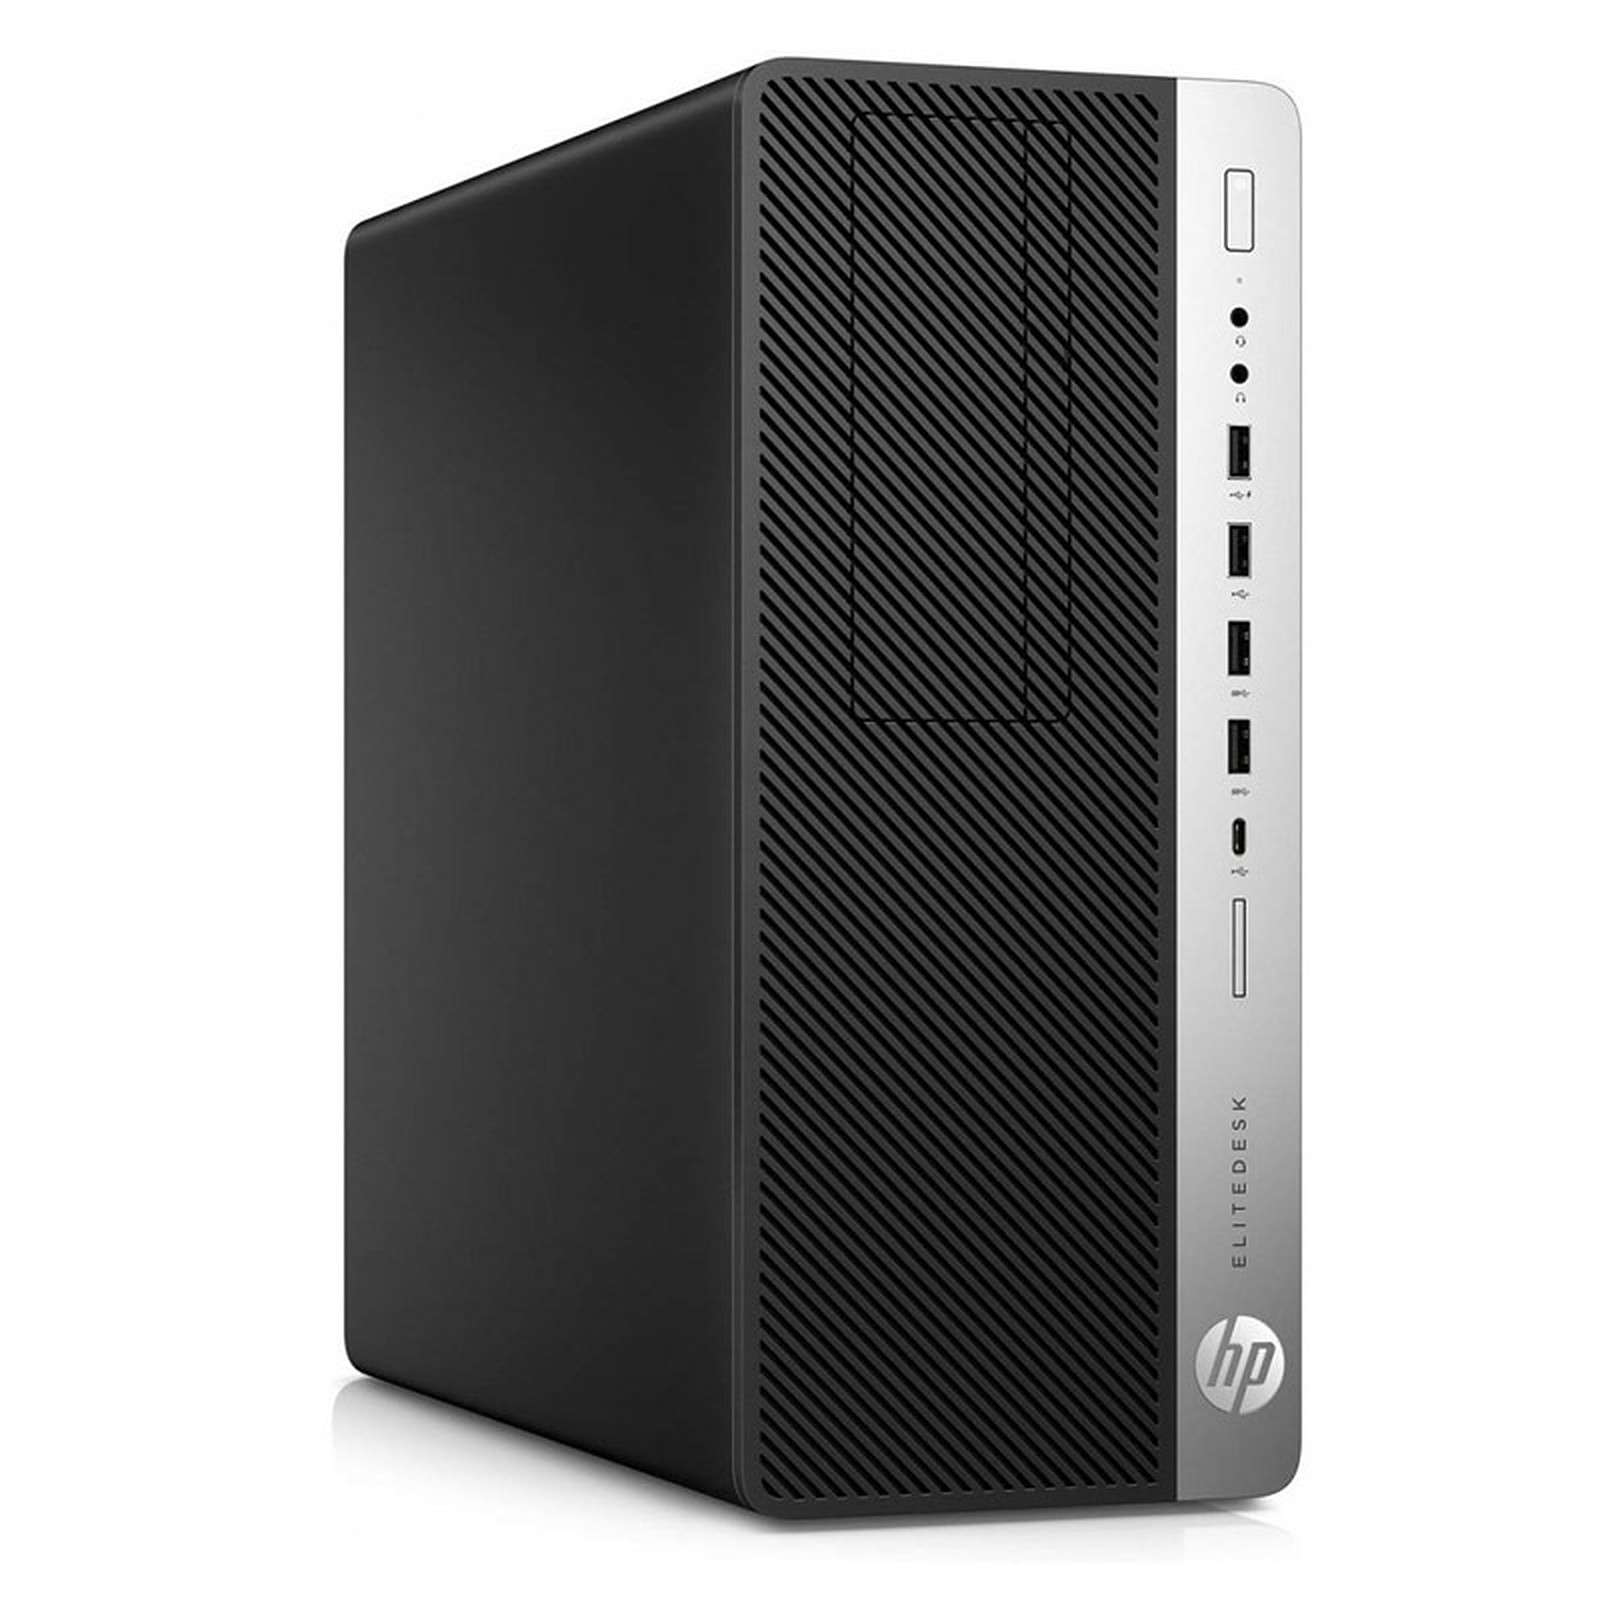 HP EliteDesk 800 G3 TWR (I56585) · Reconditionne - PC de bureau reconditionne HP